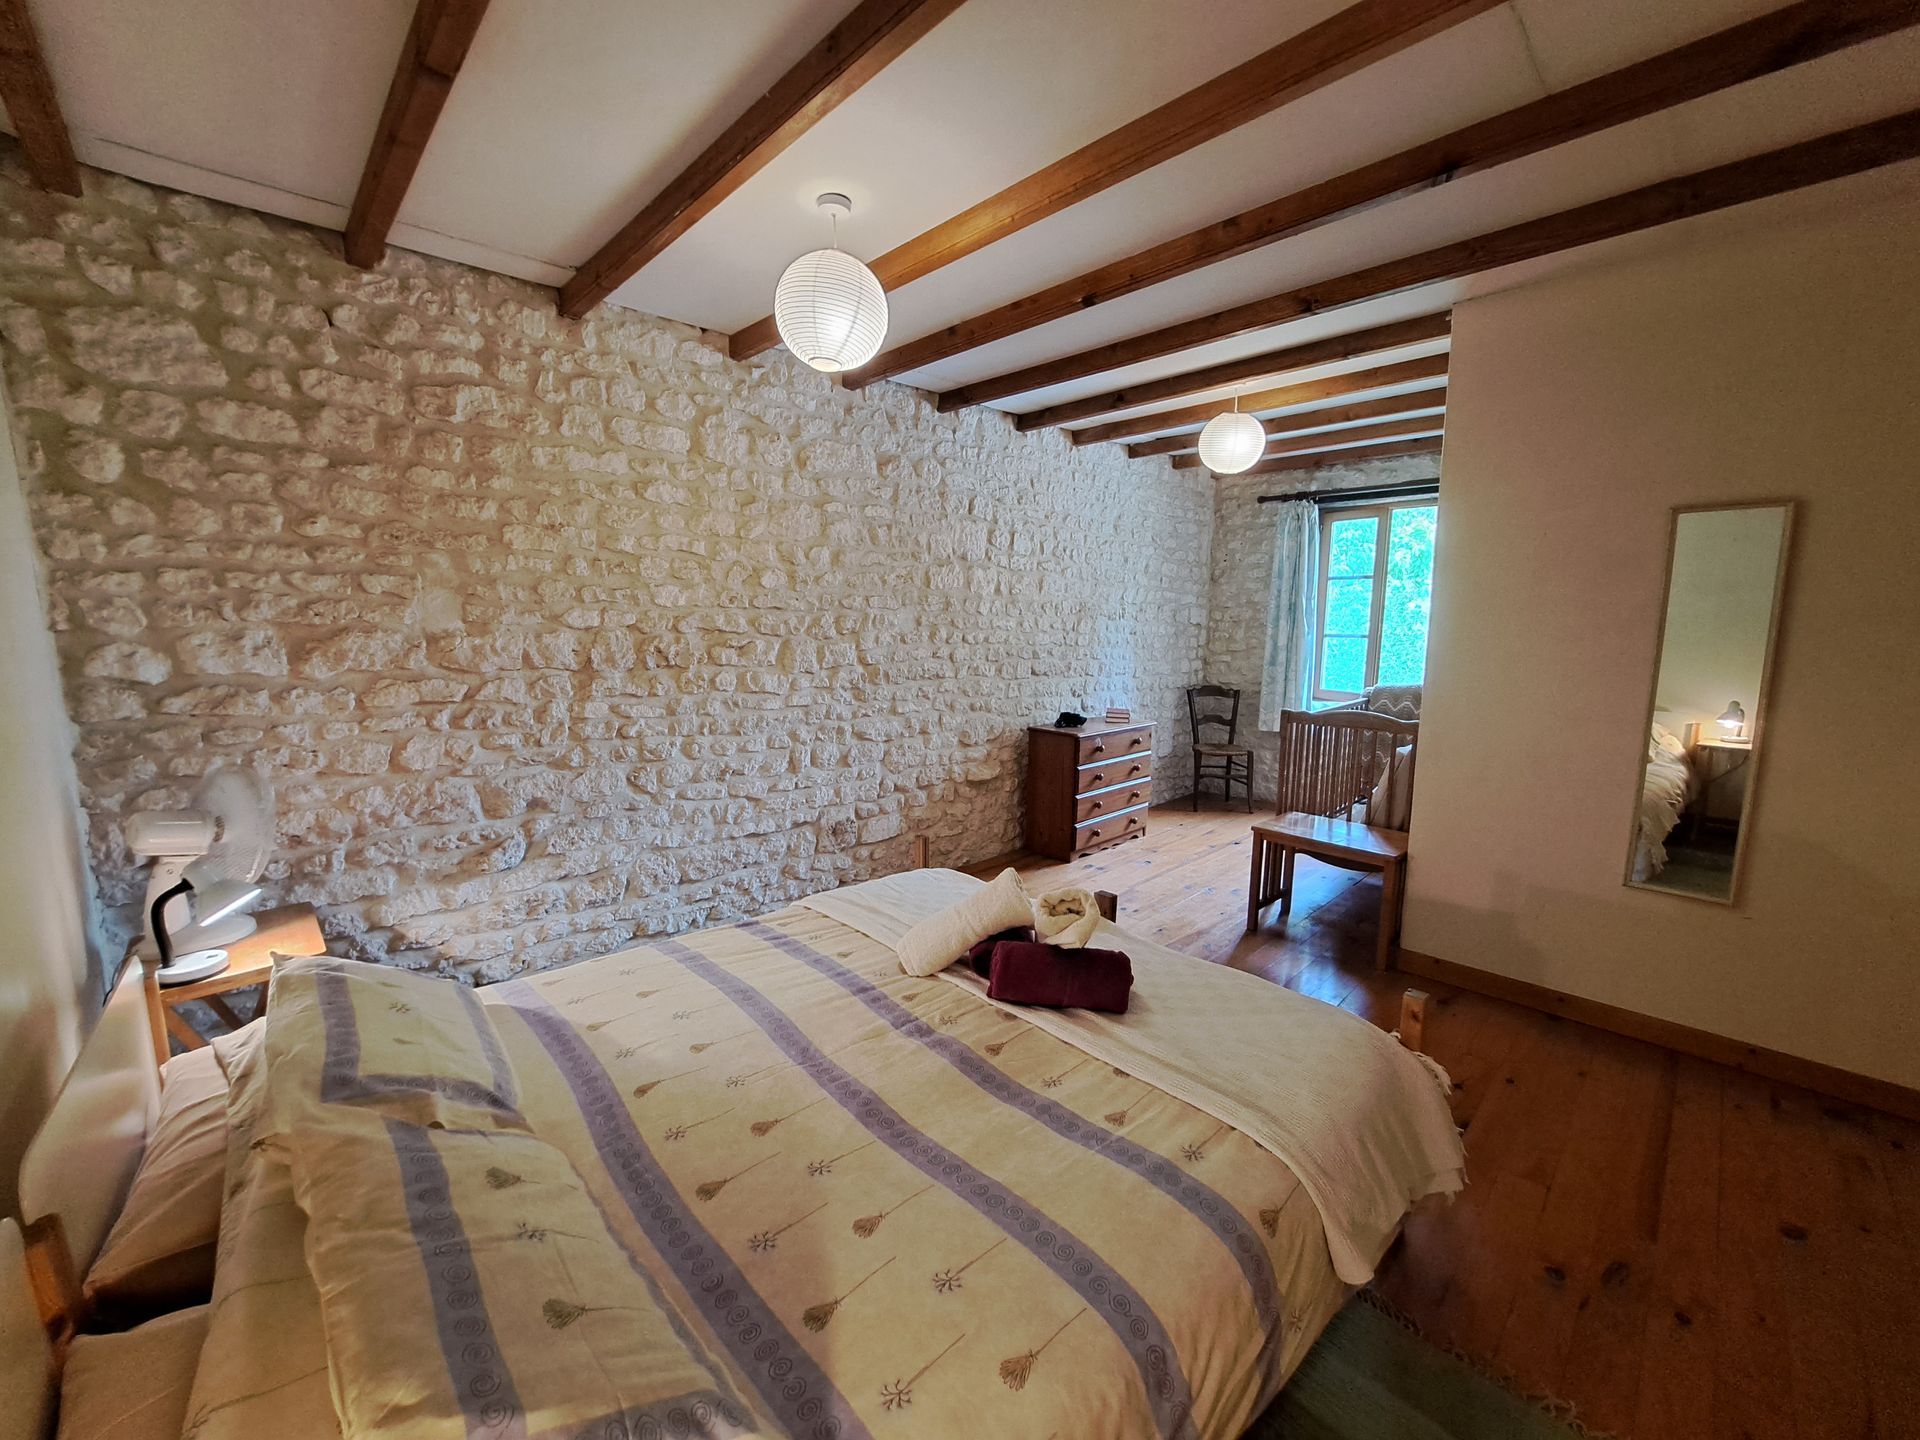 tweepersoonsslaapkamer met houten vloer en balkenplafond